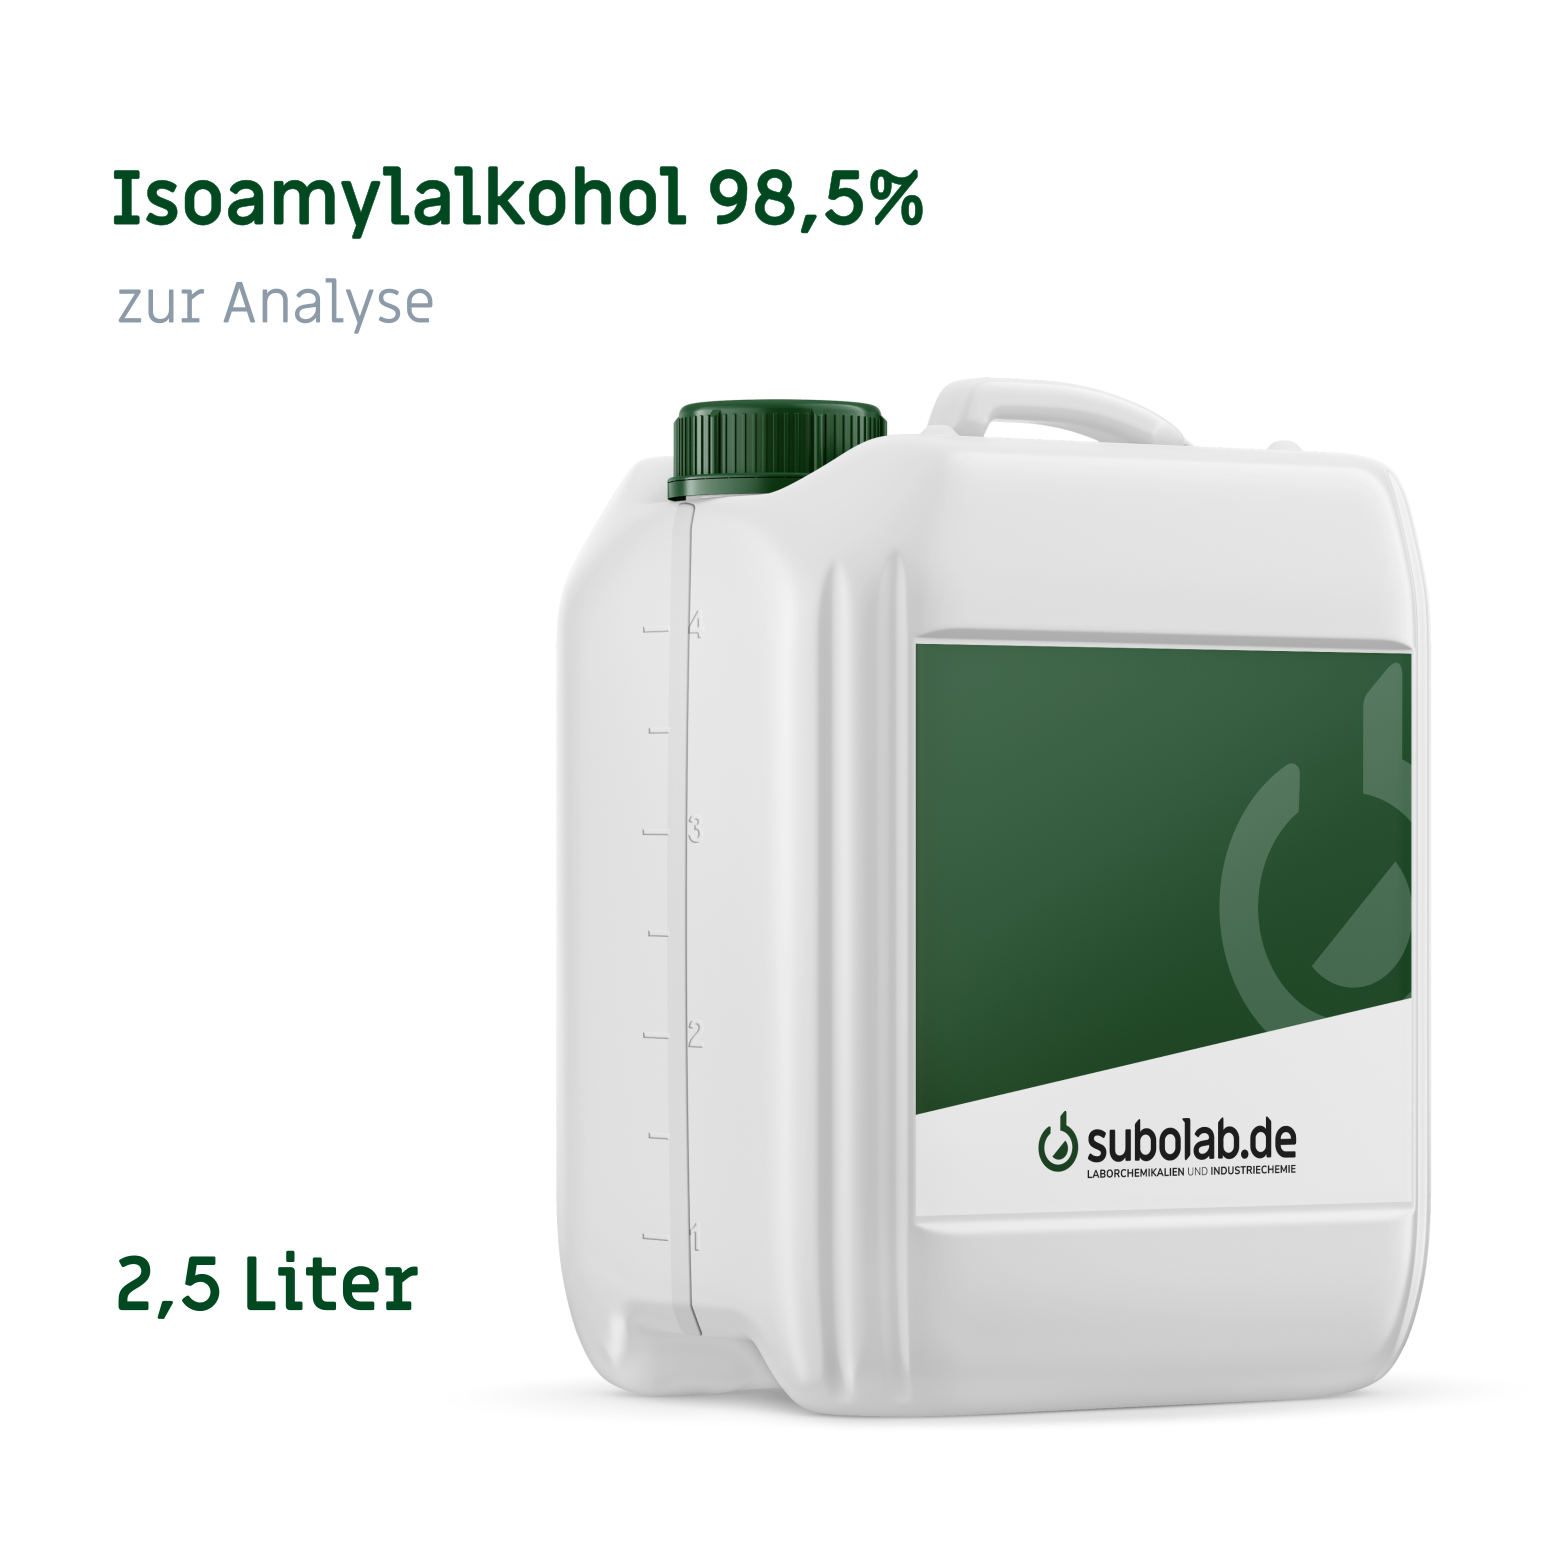 Bild von Isoamylalkohol 98,5% zur Analyse (2,5 Liter)